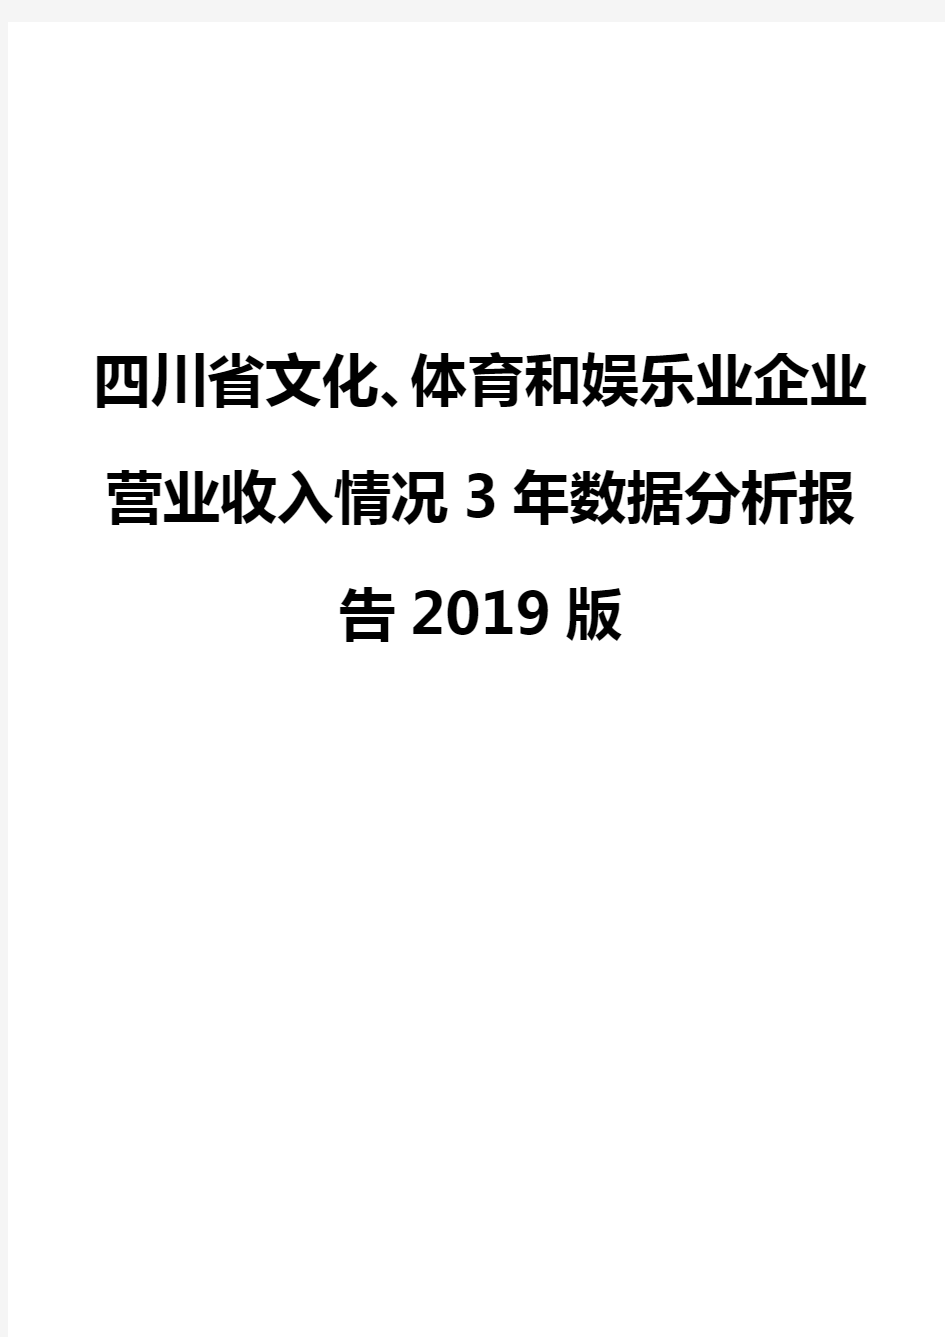 四川省文化、体育和娱乐业企业营业收入情况3年数据分析报告2019版